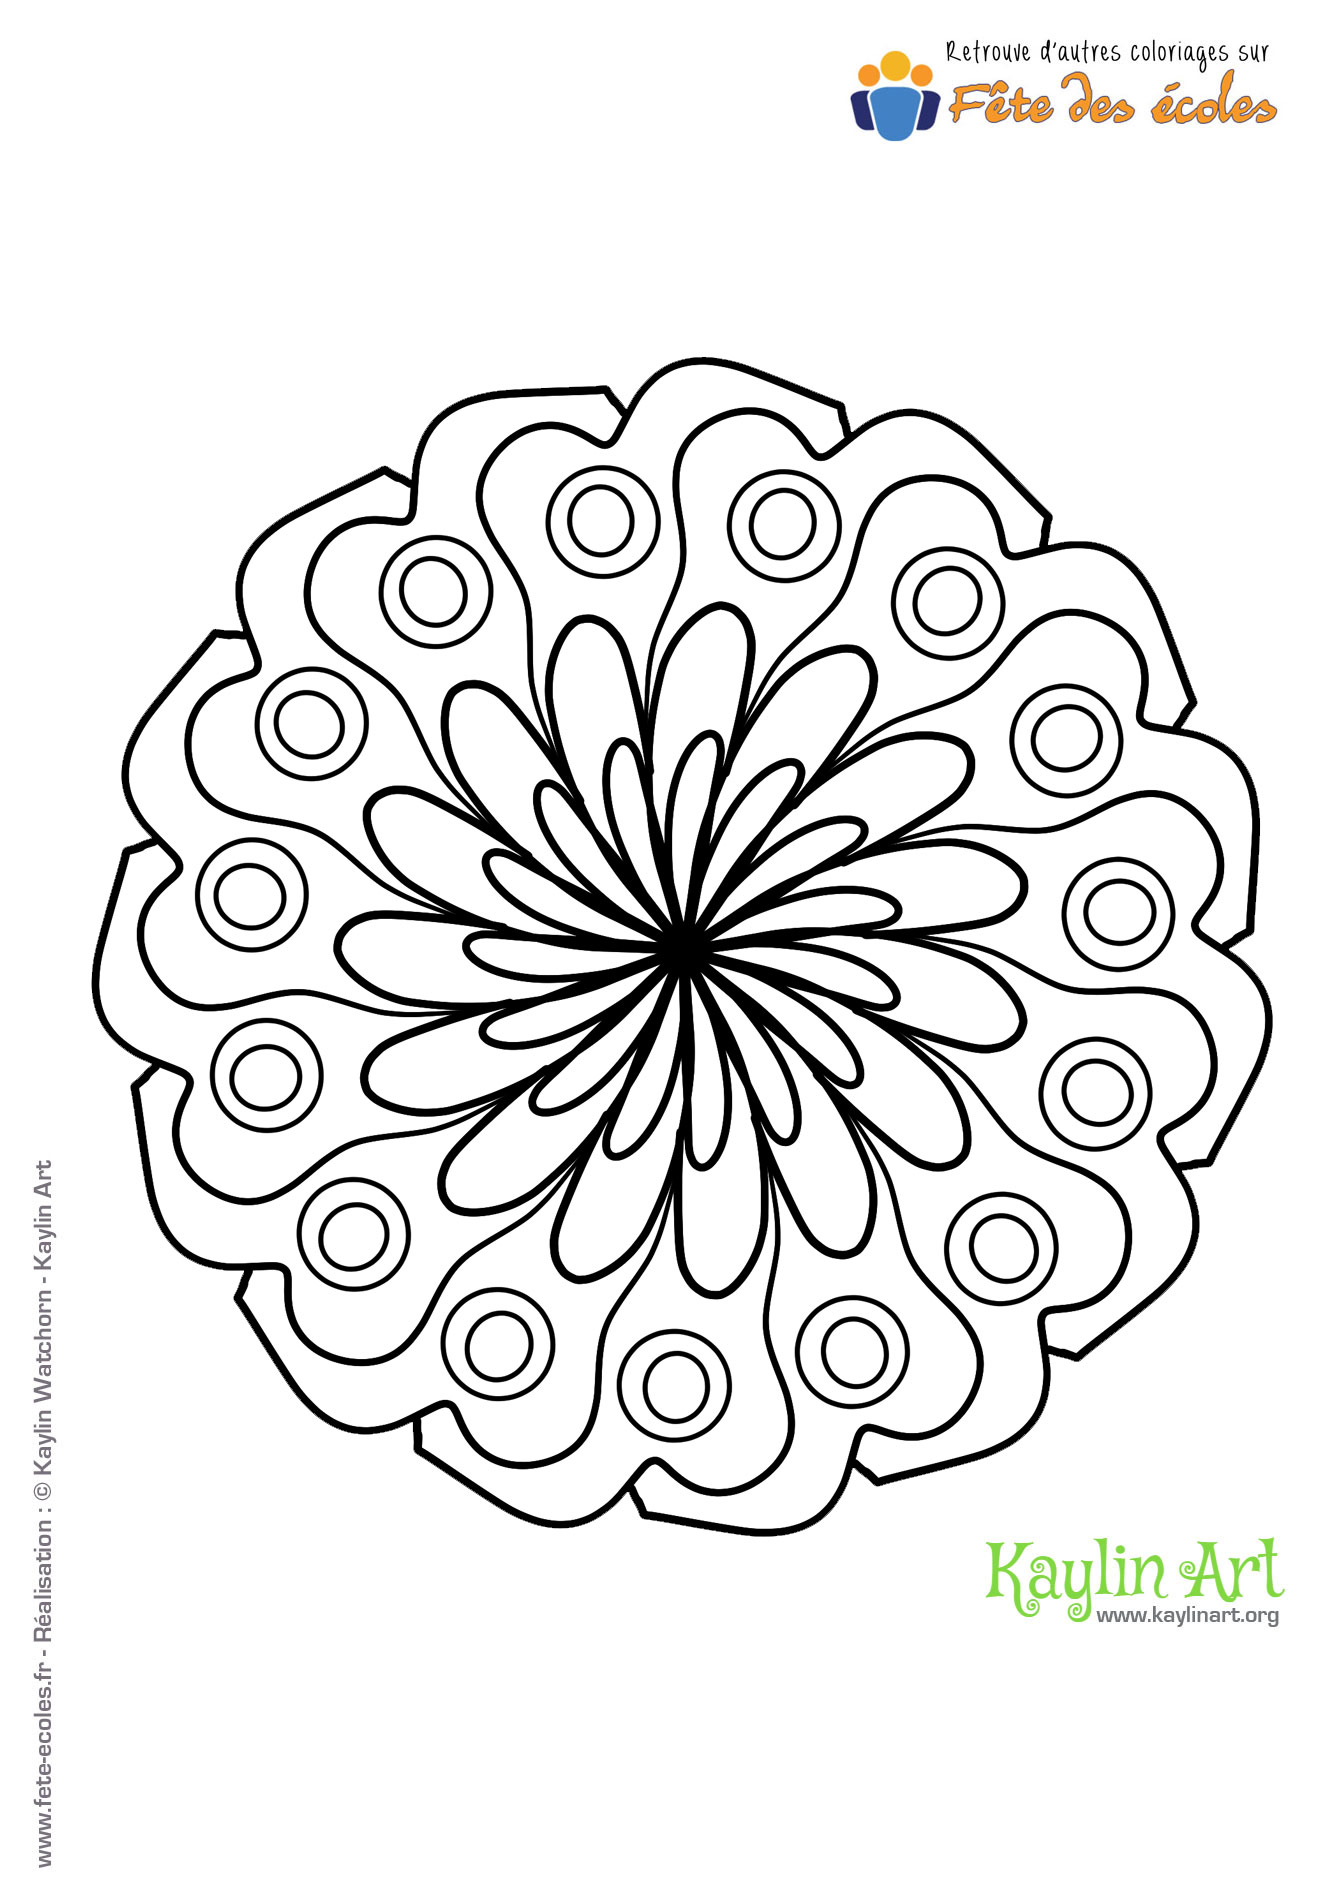 Mandala en forme de fleur de KaylinArt sur Fête des Écoles